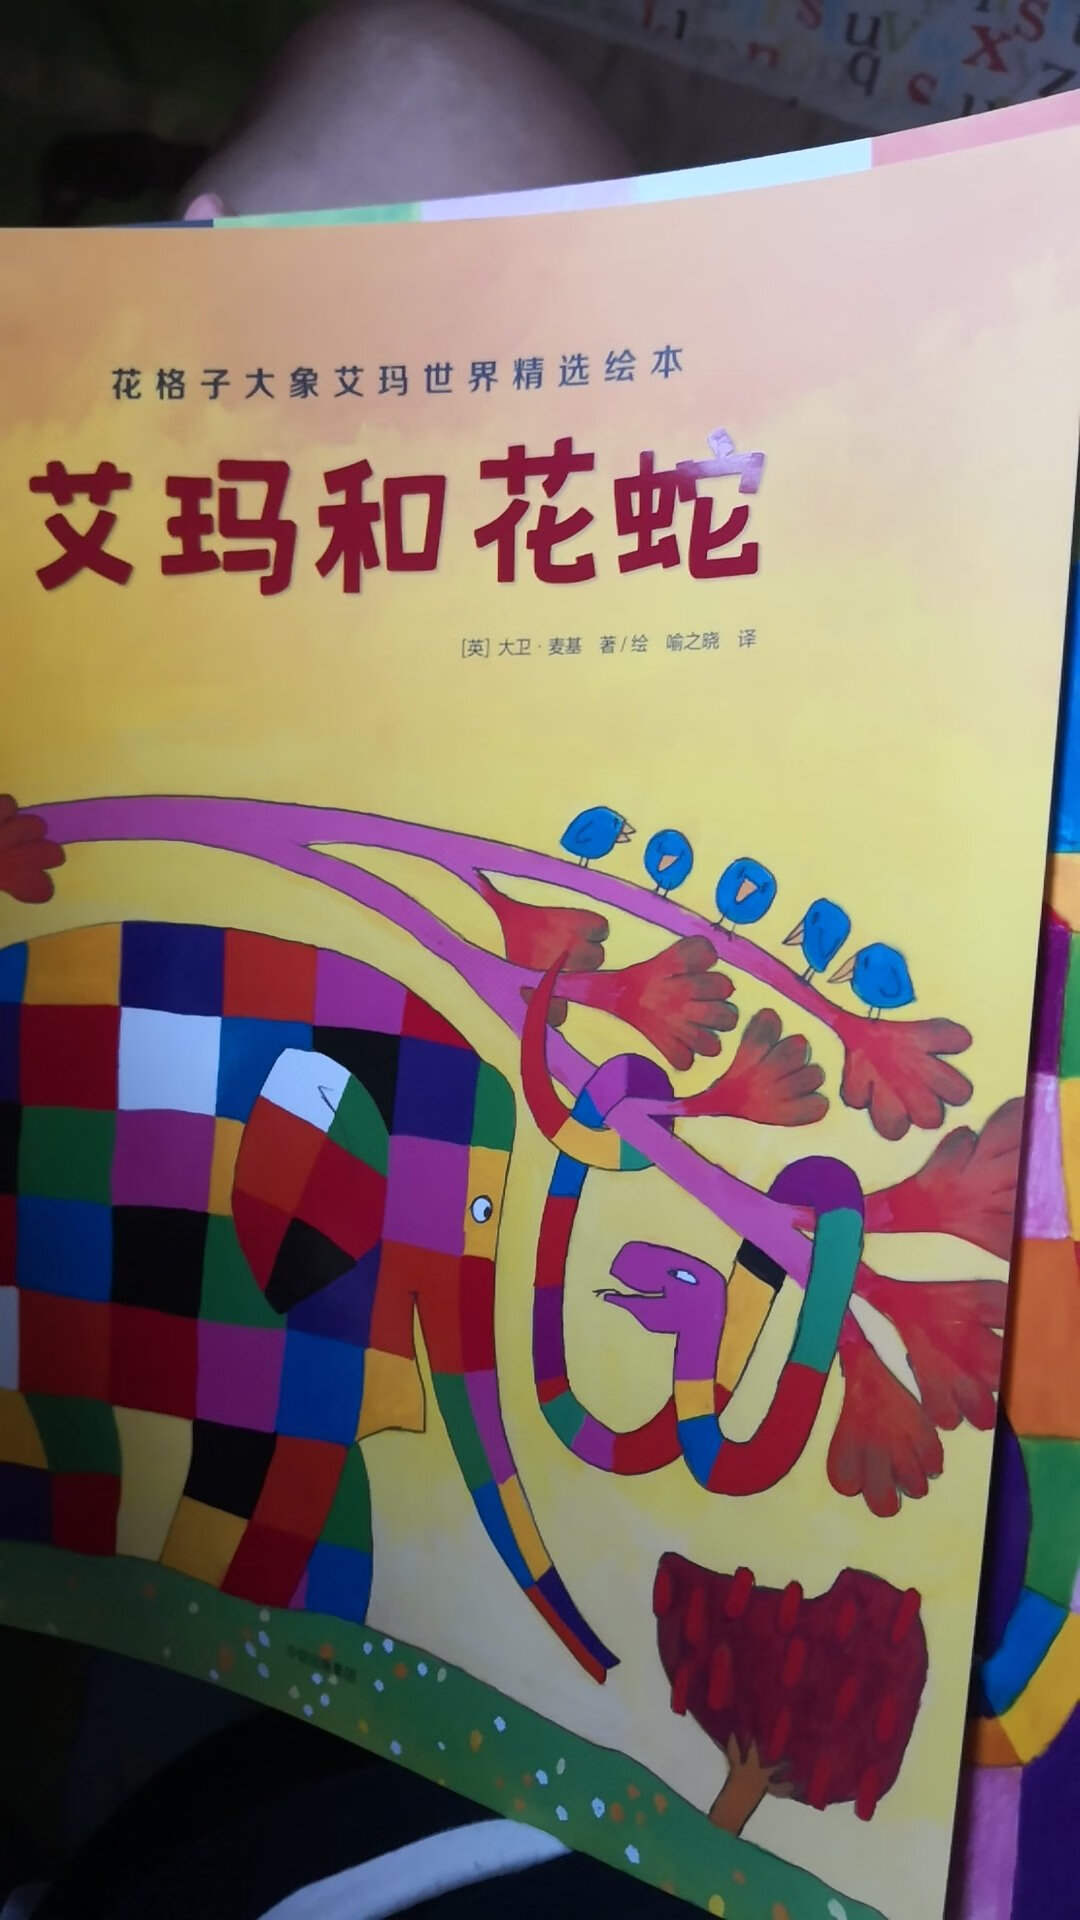 大象艾玛是一套特别有趣的书，一个与众不同的大象带来了很多不一样的故事